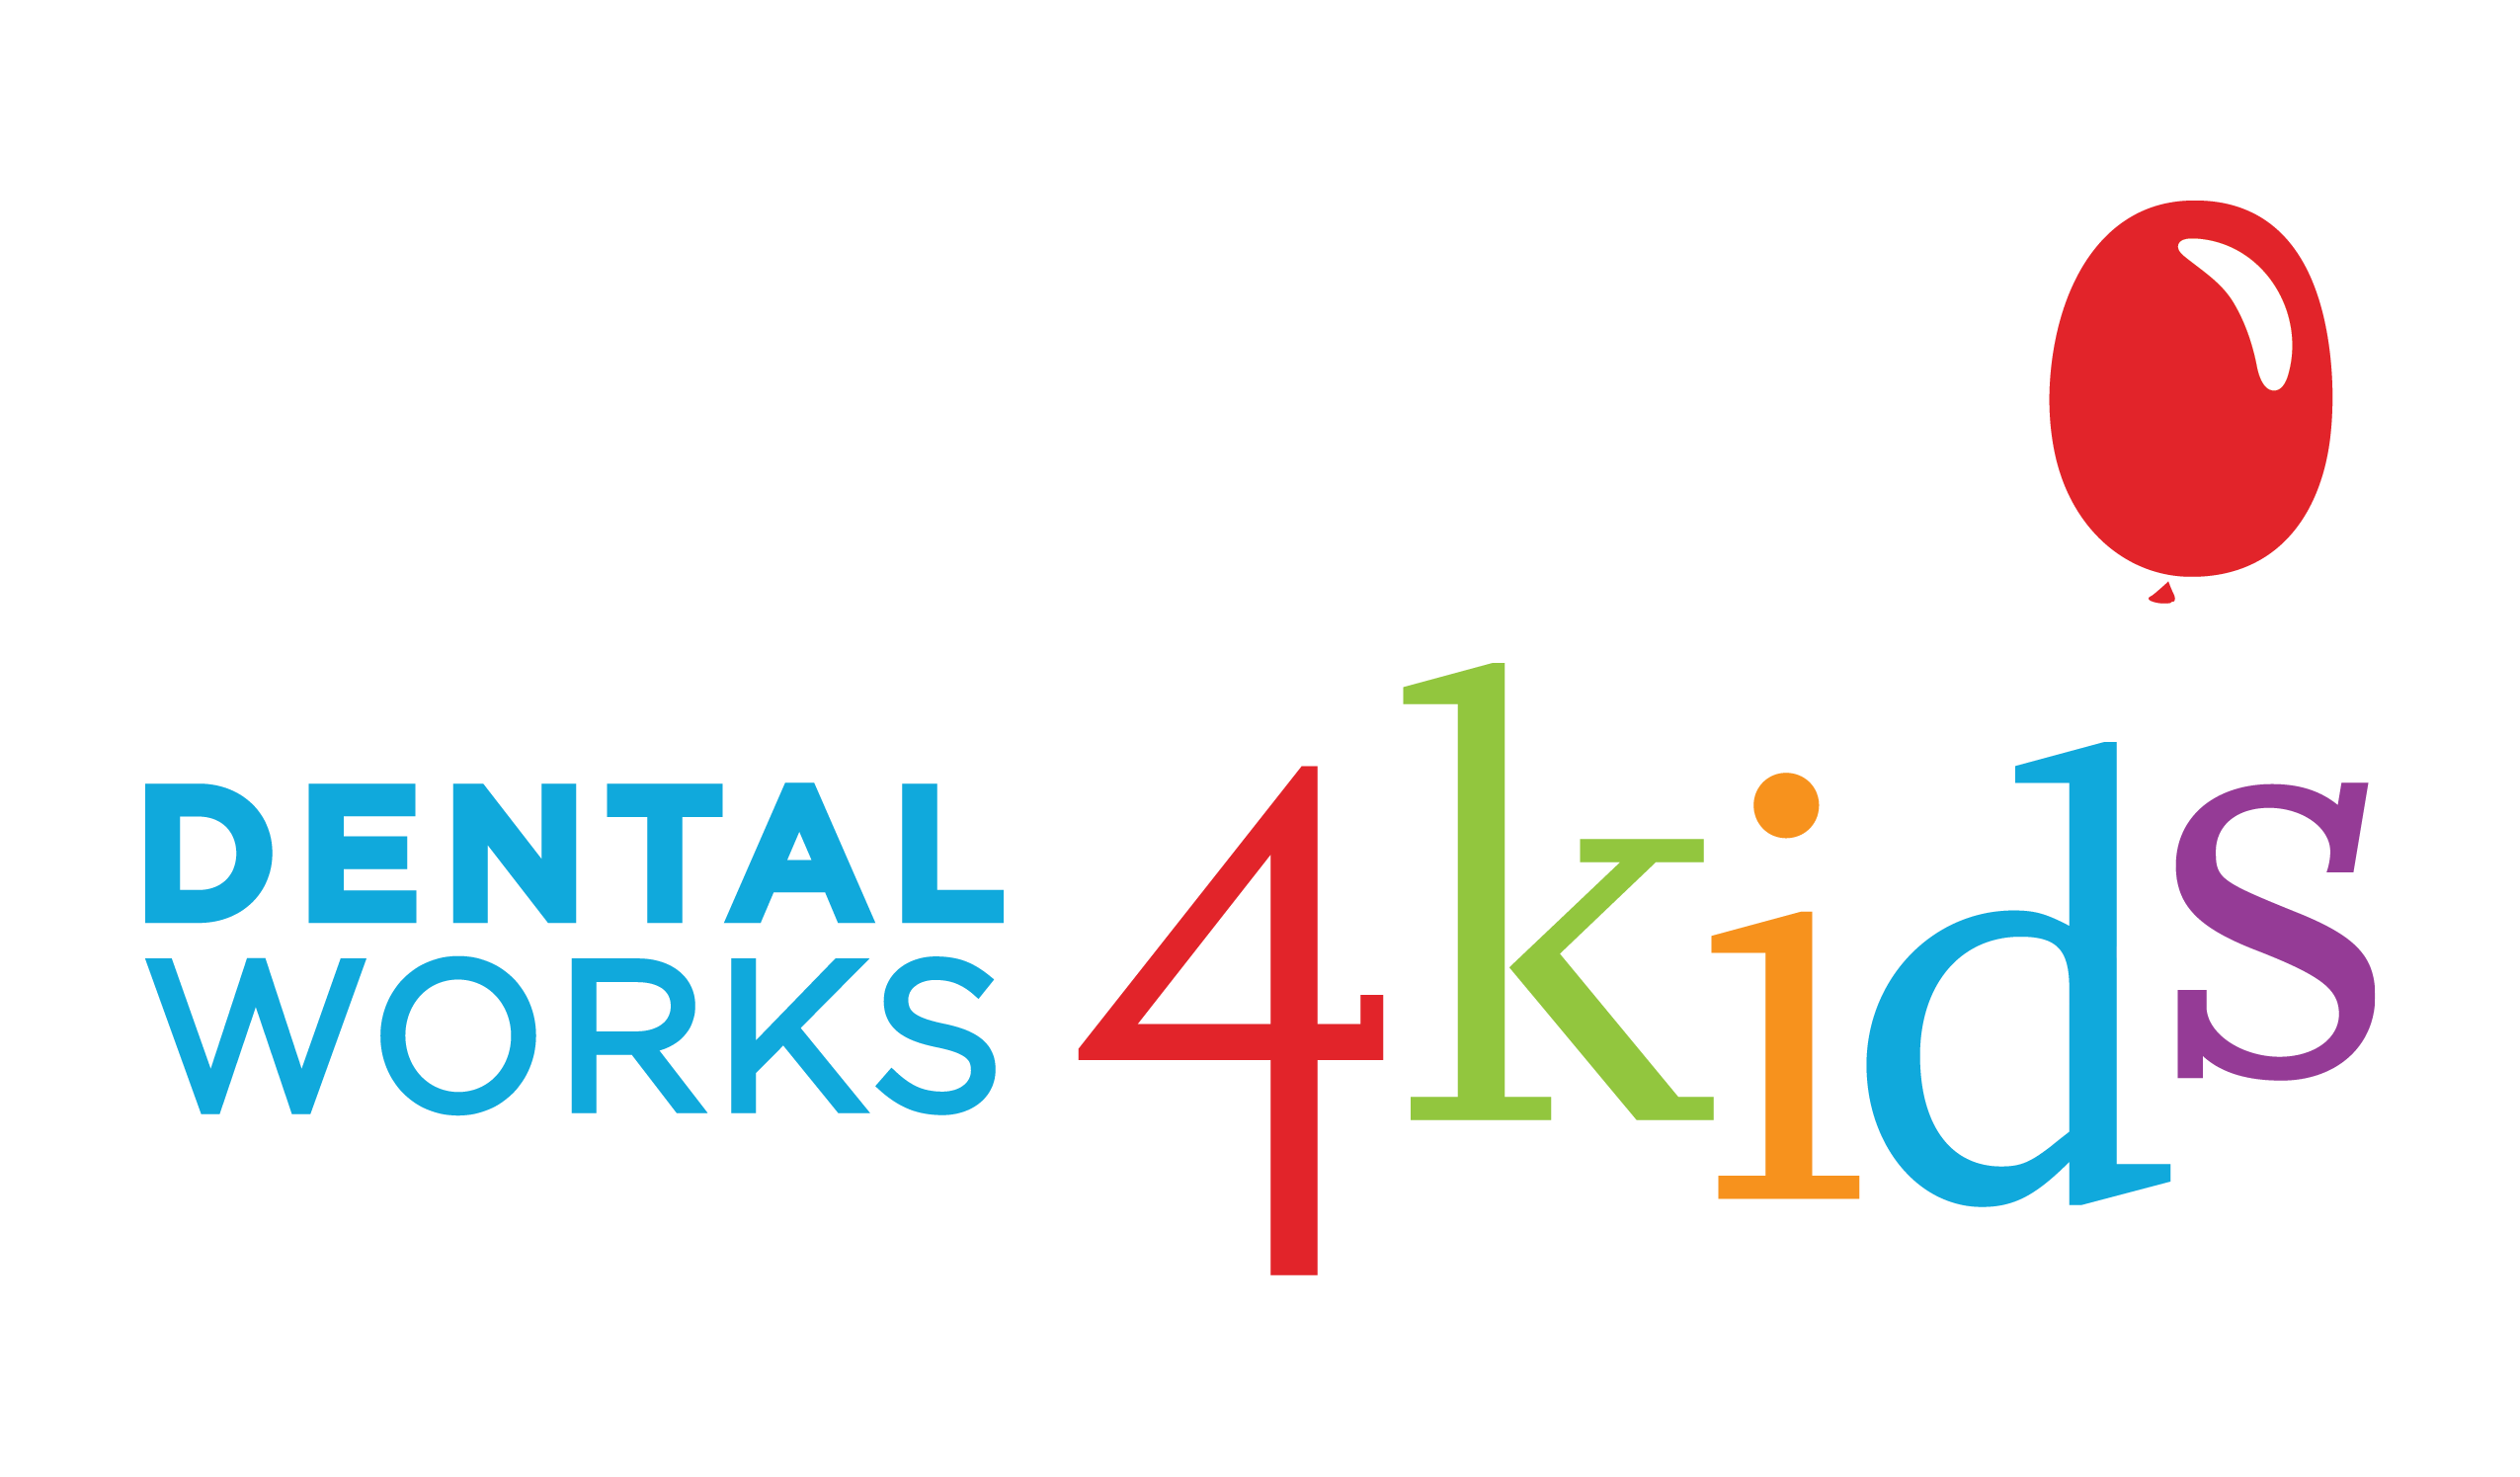 Dental Works 4 Kids - Logo